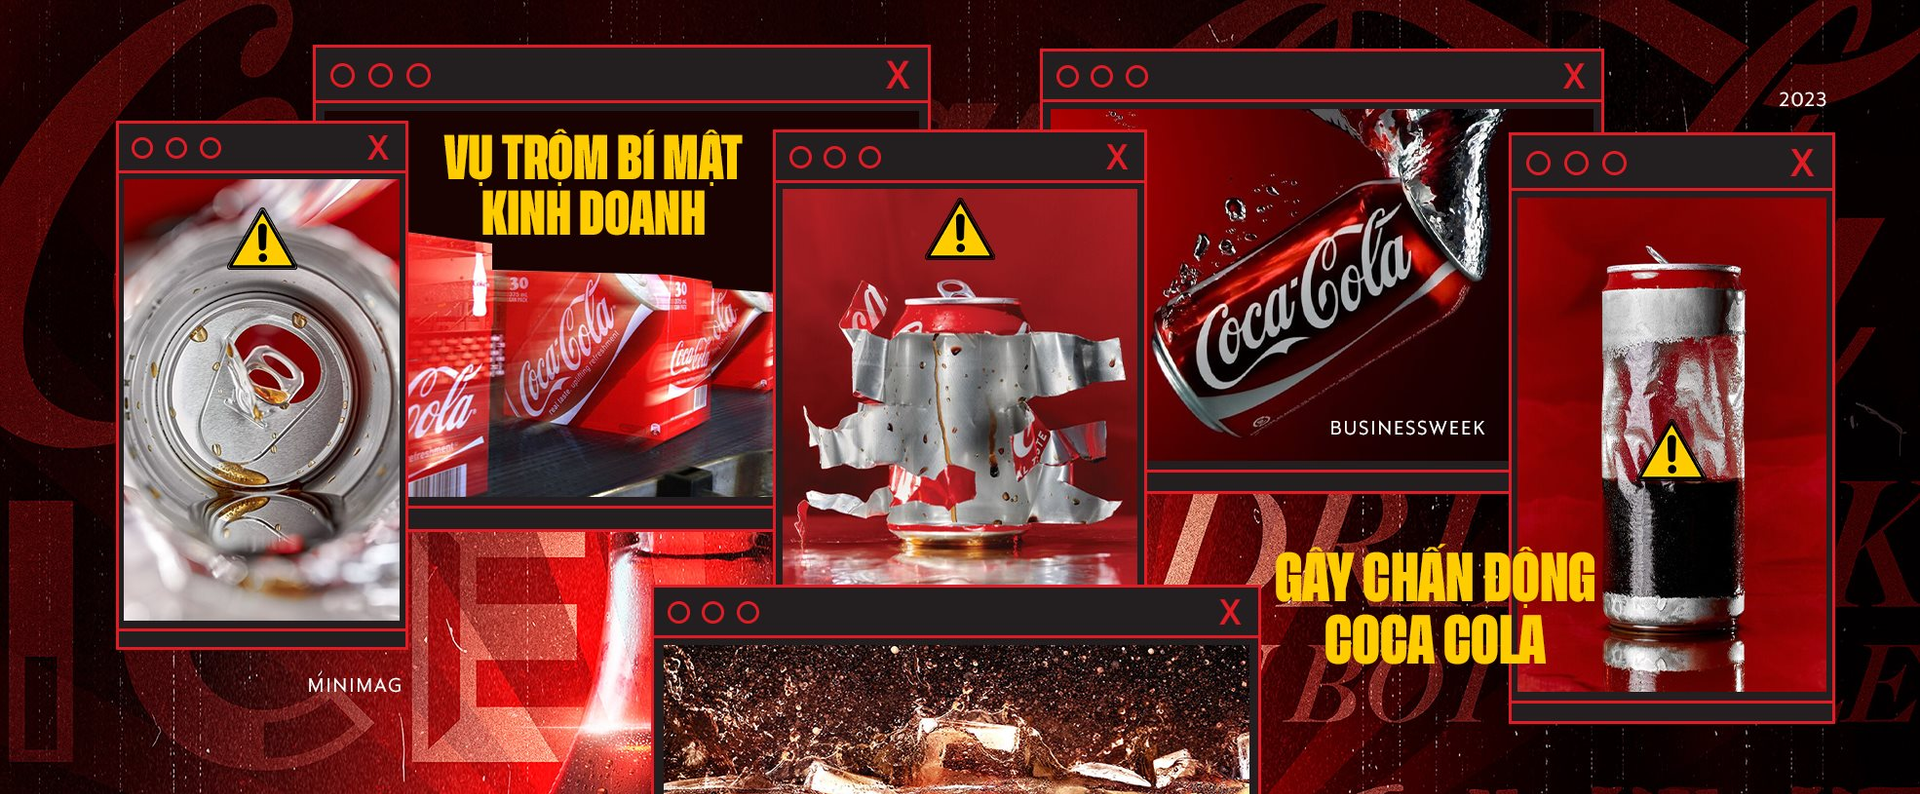 Vụ trộm bí mật kinh doanh chấn động: Coca Cola bị mất công thức trị giá 2.800 tỉ đồng, nữ thiên tài Trung Quốc suýt xây dựng trót lọt dây chuyền 'phake' ở quê hương - Ảnh 2.